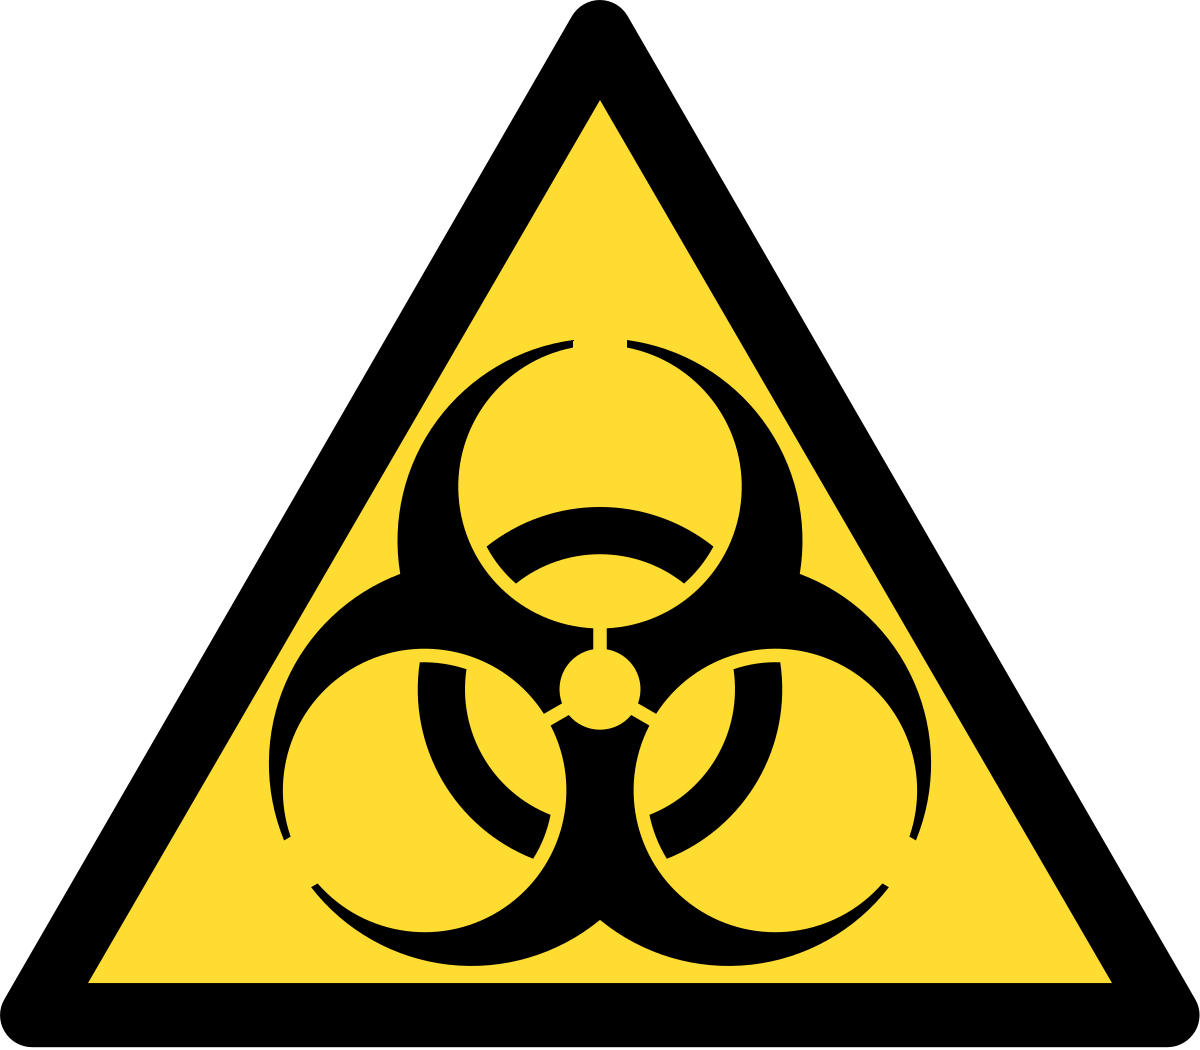 1200px-Biohazard.svg[1]